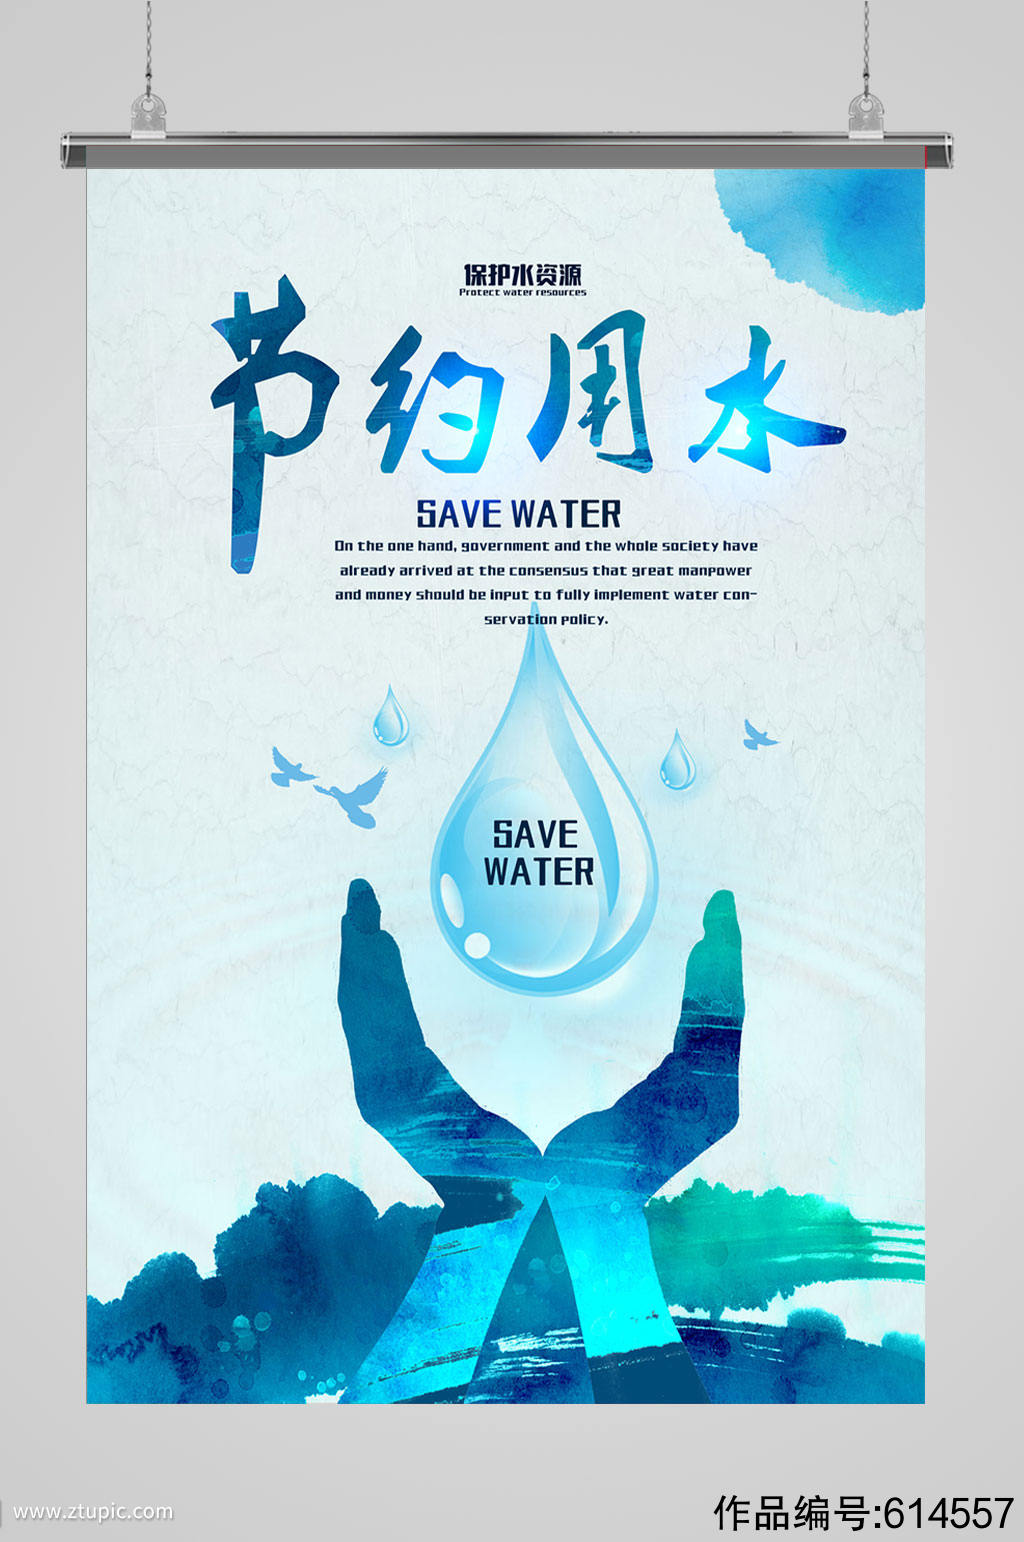 节约用水从我做起节水宣传海报